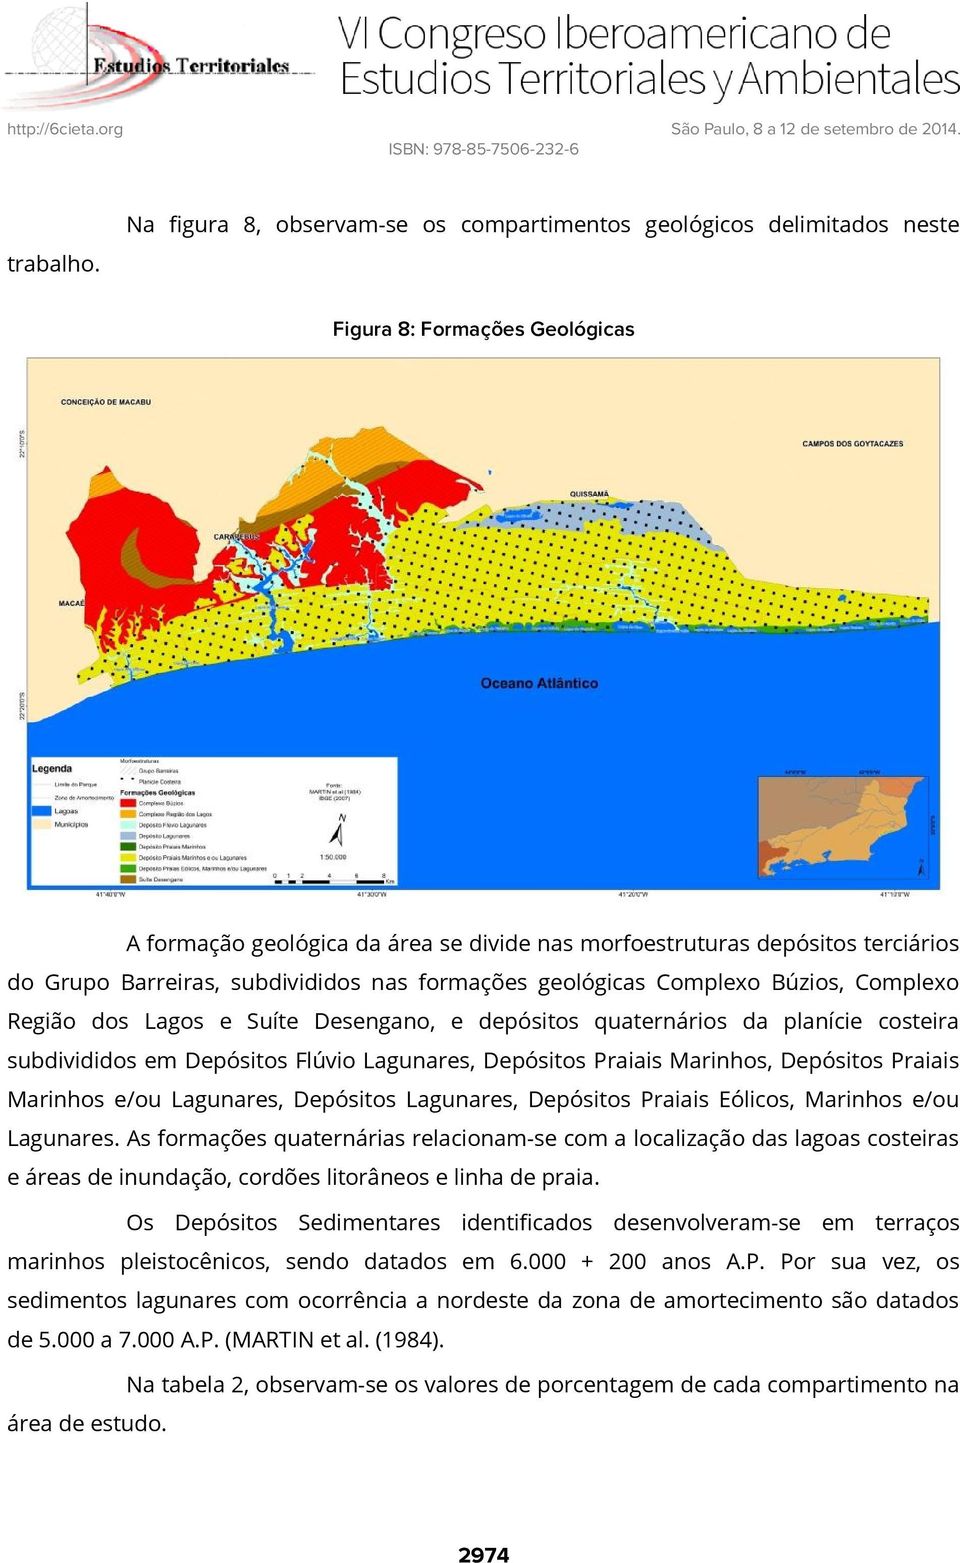 Região dos Lagos e Suíte Desengano, e depósitos quaternários da planície costeira subdivididos em Depósitos Flúvio Lagunares, Depósitos Praiais Marinhos, Depósitos Praiais Marinhos e/ou Lagunares,